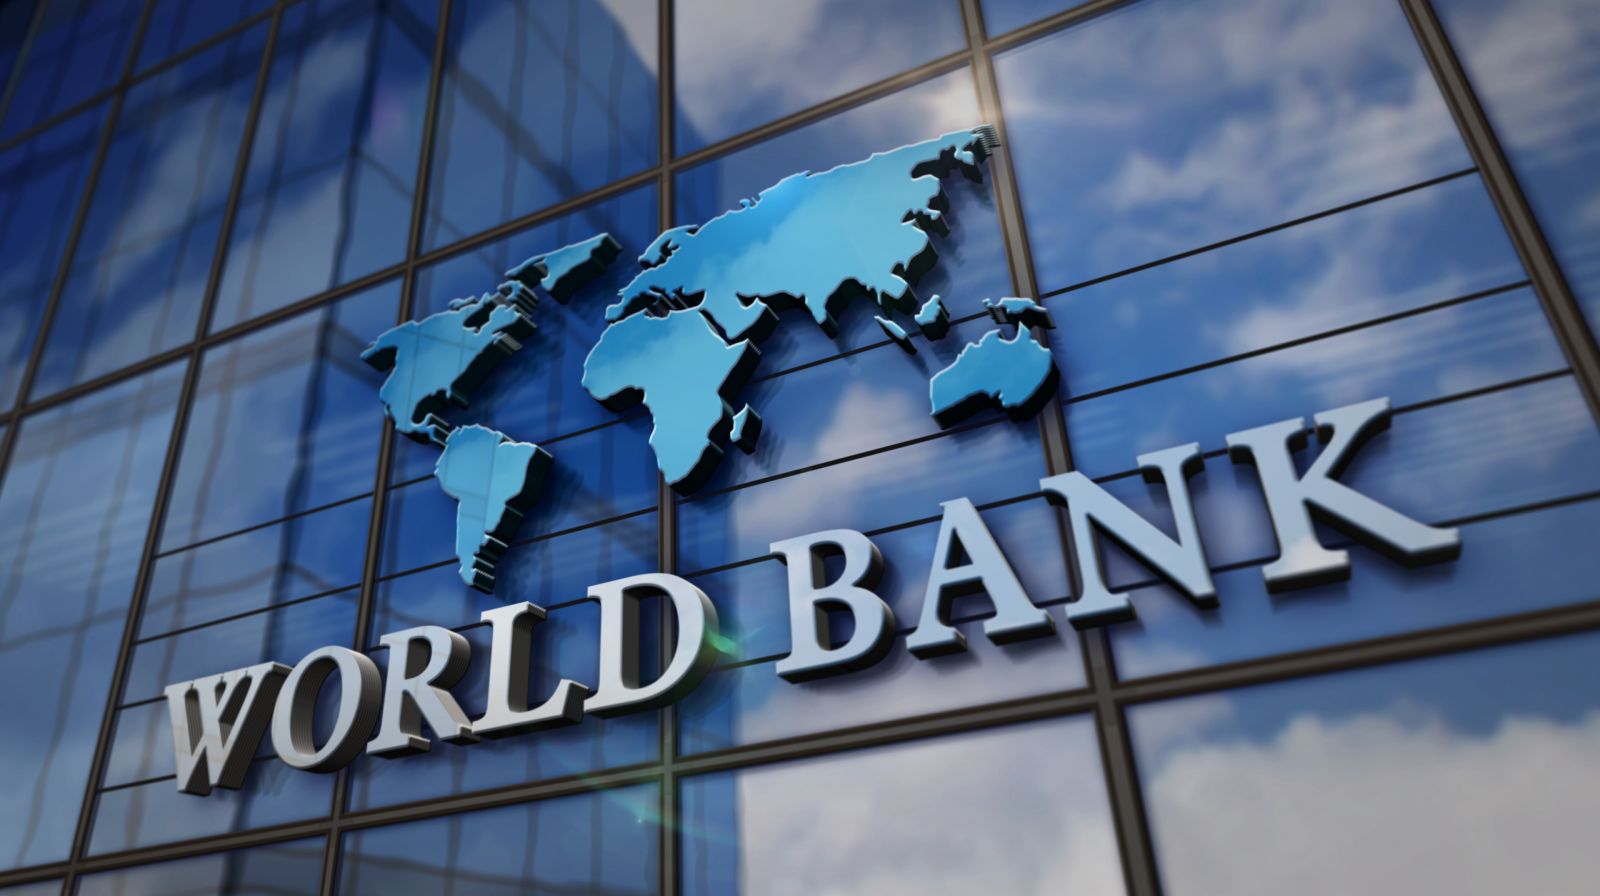 Dünya Bankı: "Şərqi Asiyanın böyüməsi dünyanın qalan hissəsindən daha sürətlidir"